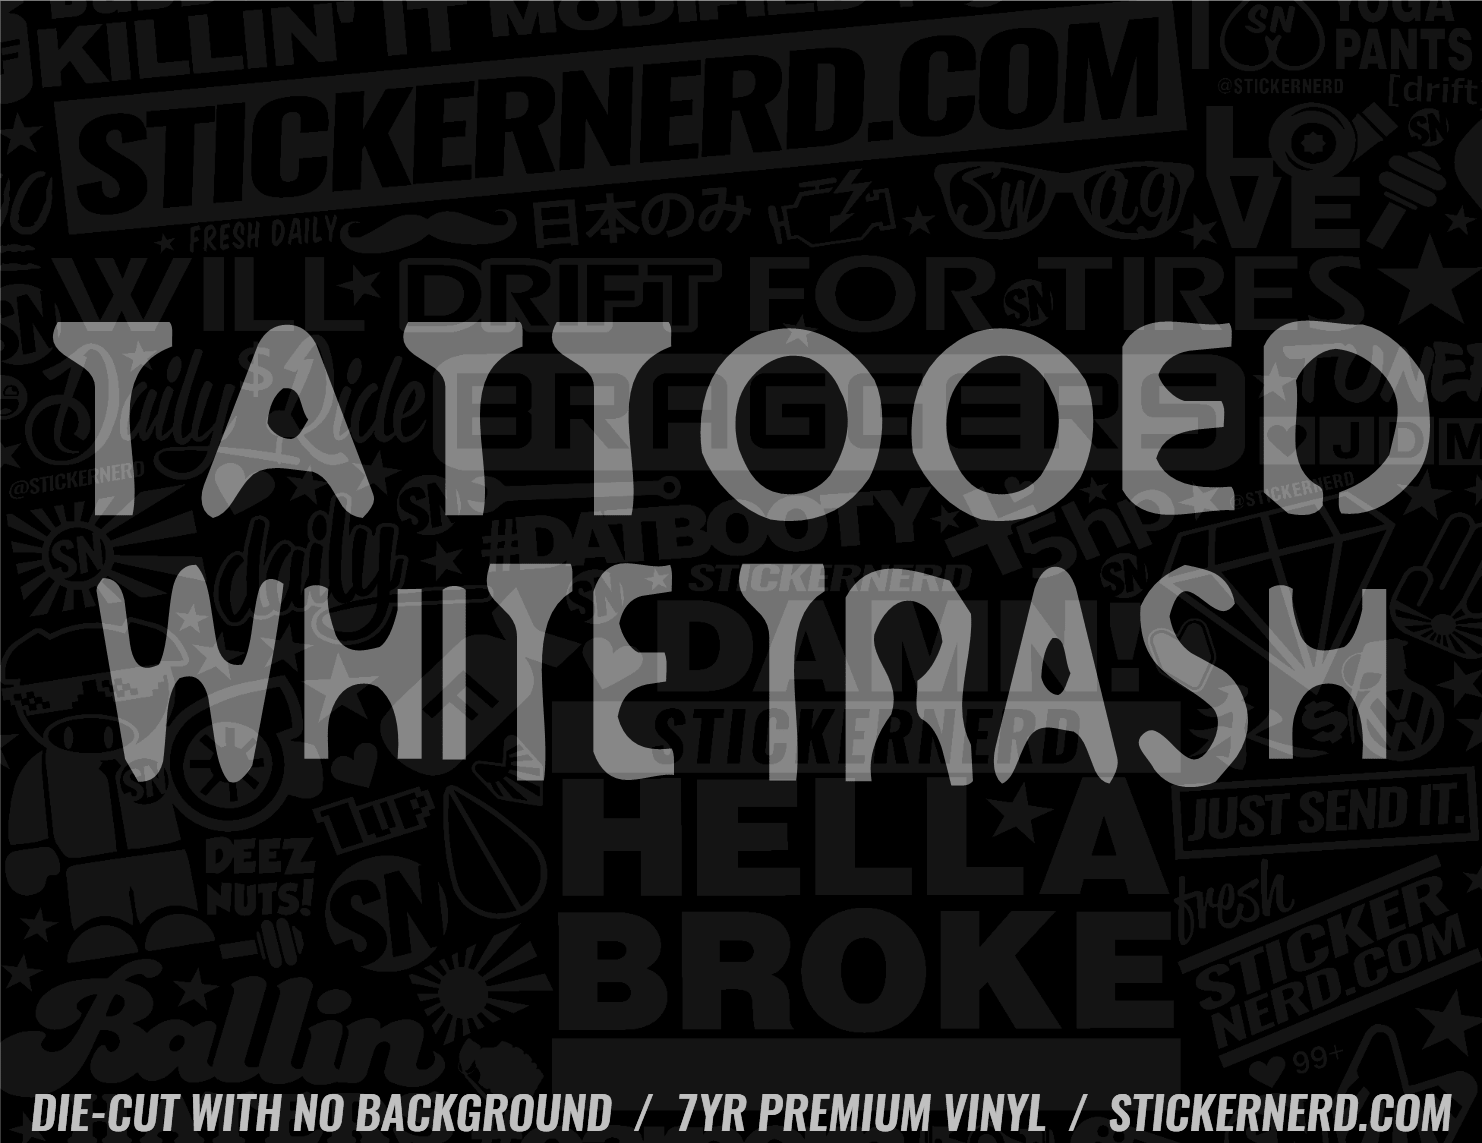 Tattooed White Trash Sticker - Decal - STICKERNERD.COM